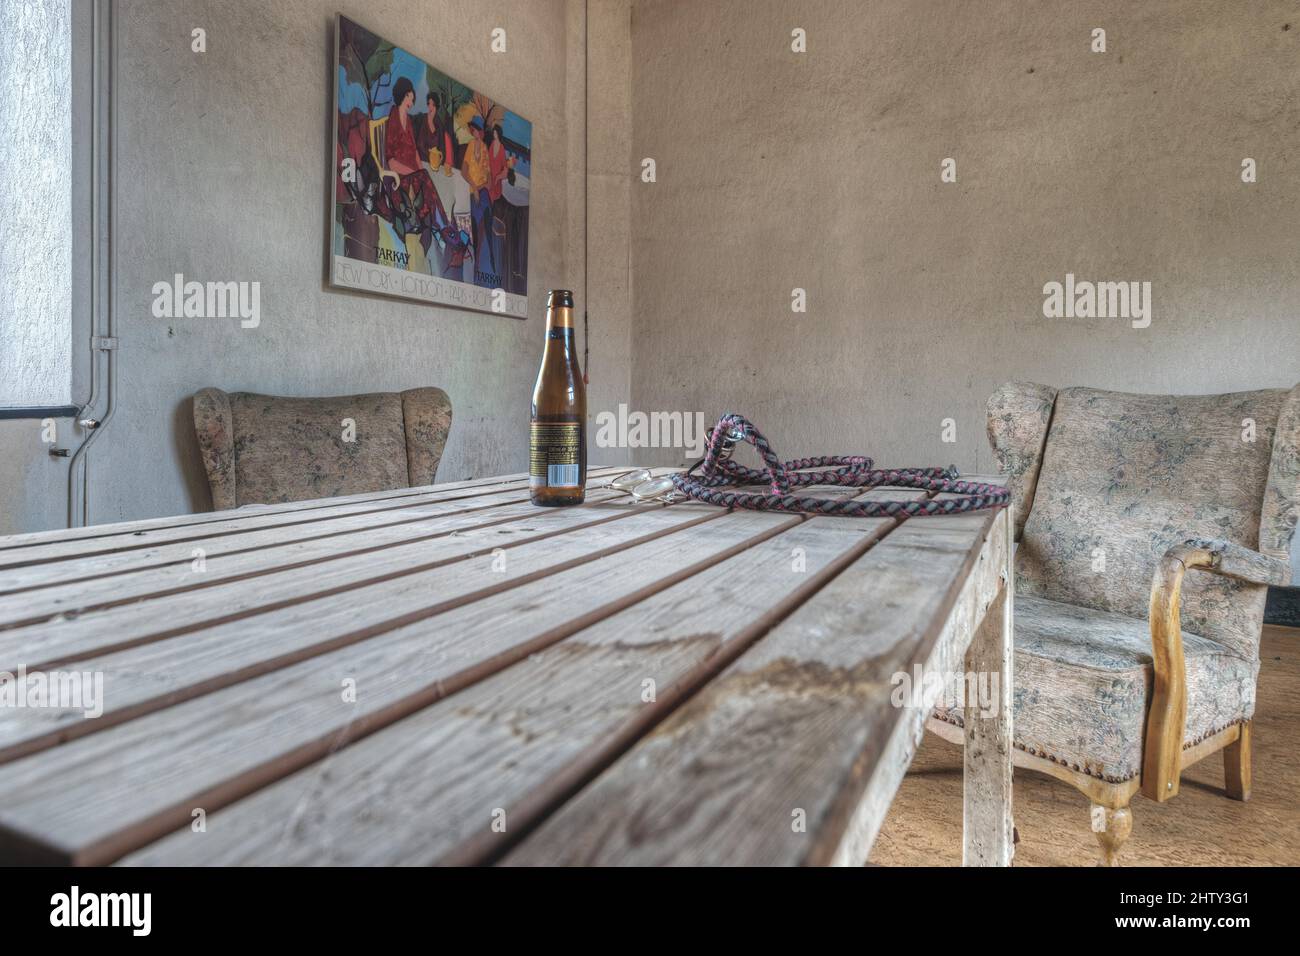 Luogo perduto, birra su tavola, Fattoria abbandonata, Comuni, Belgio Foto Stock